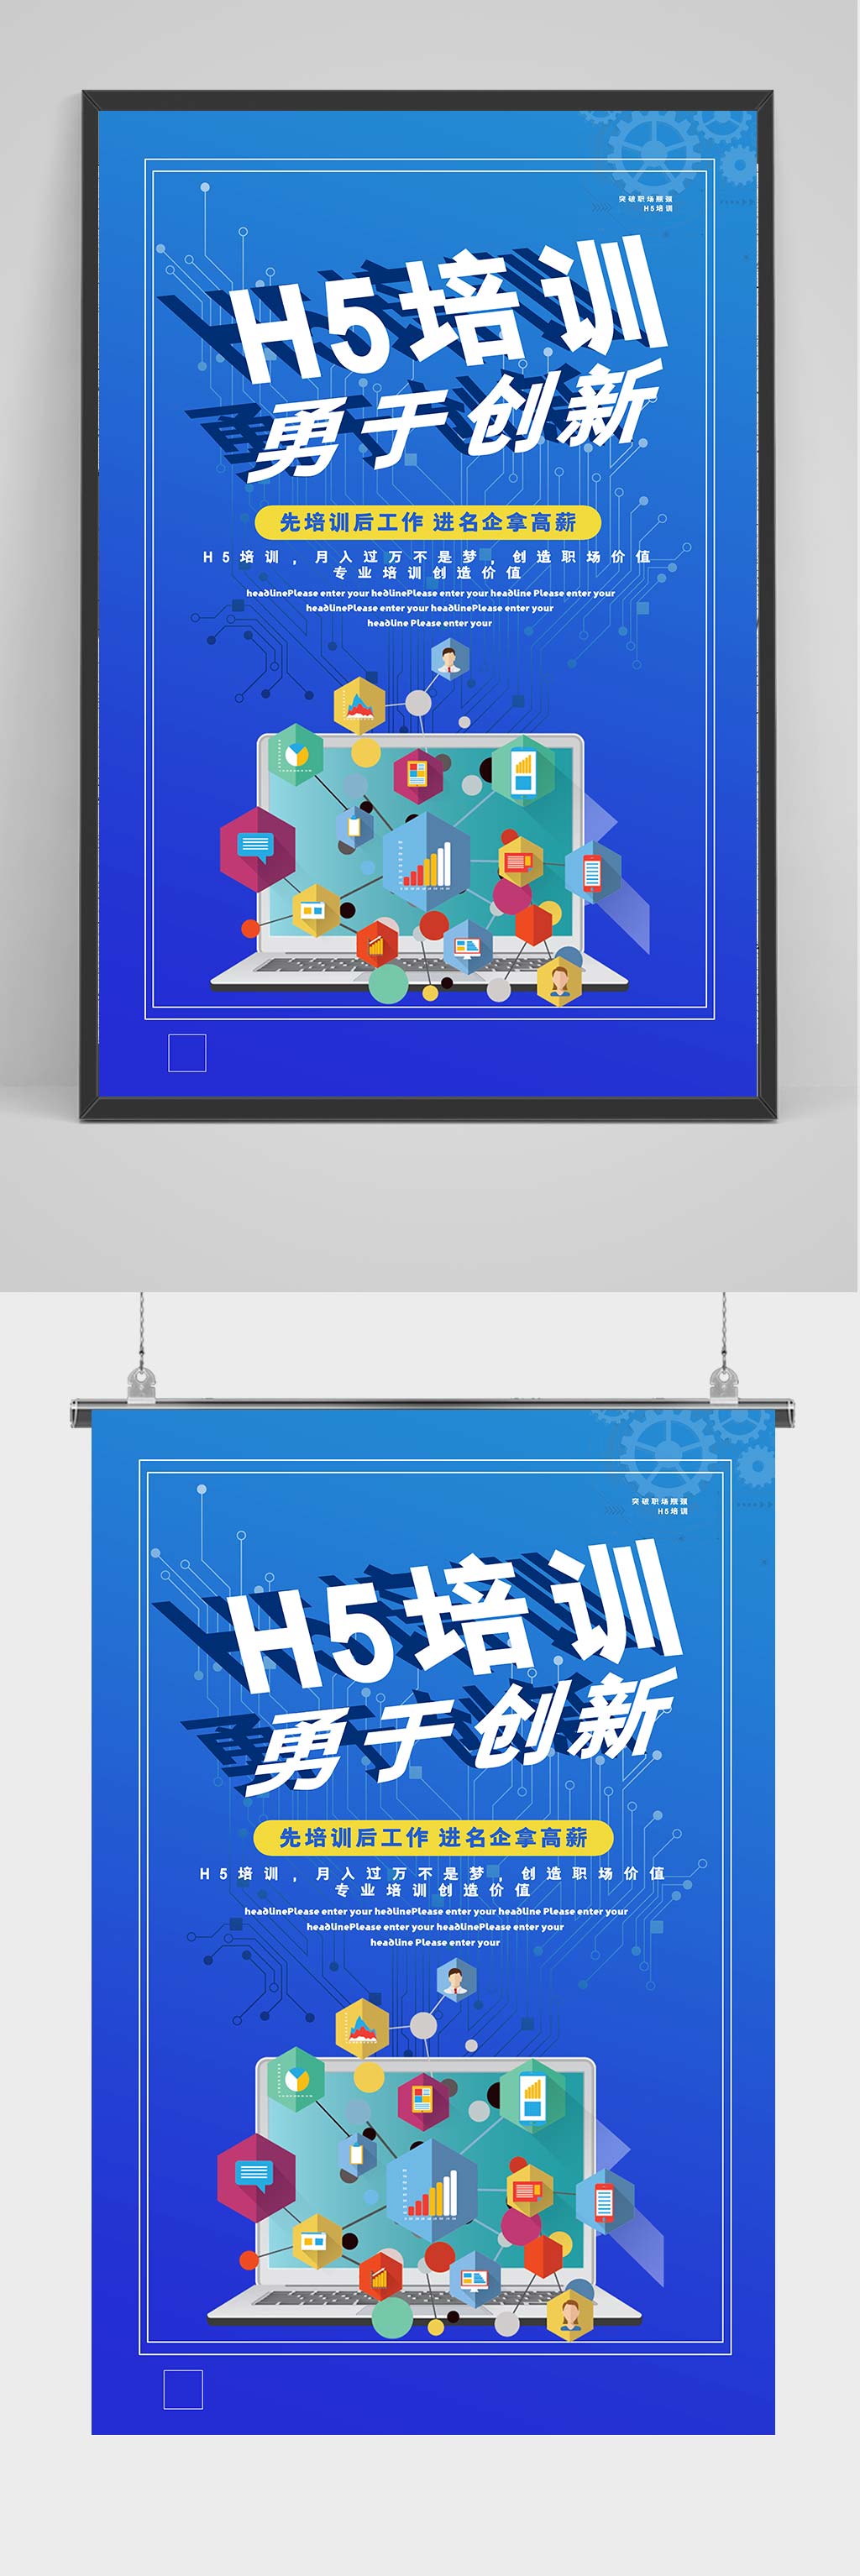 海报立即下载暑期培训班拔高第一课app界面设计h5长图立即下载暑期